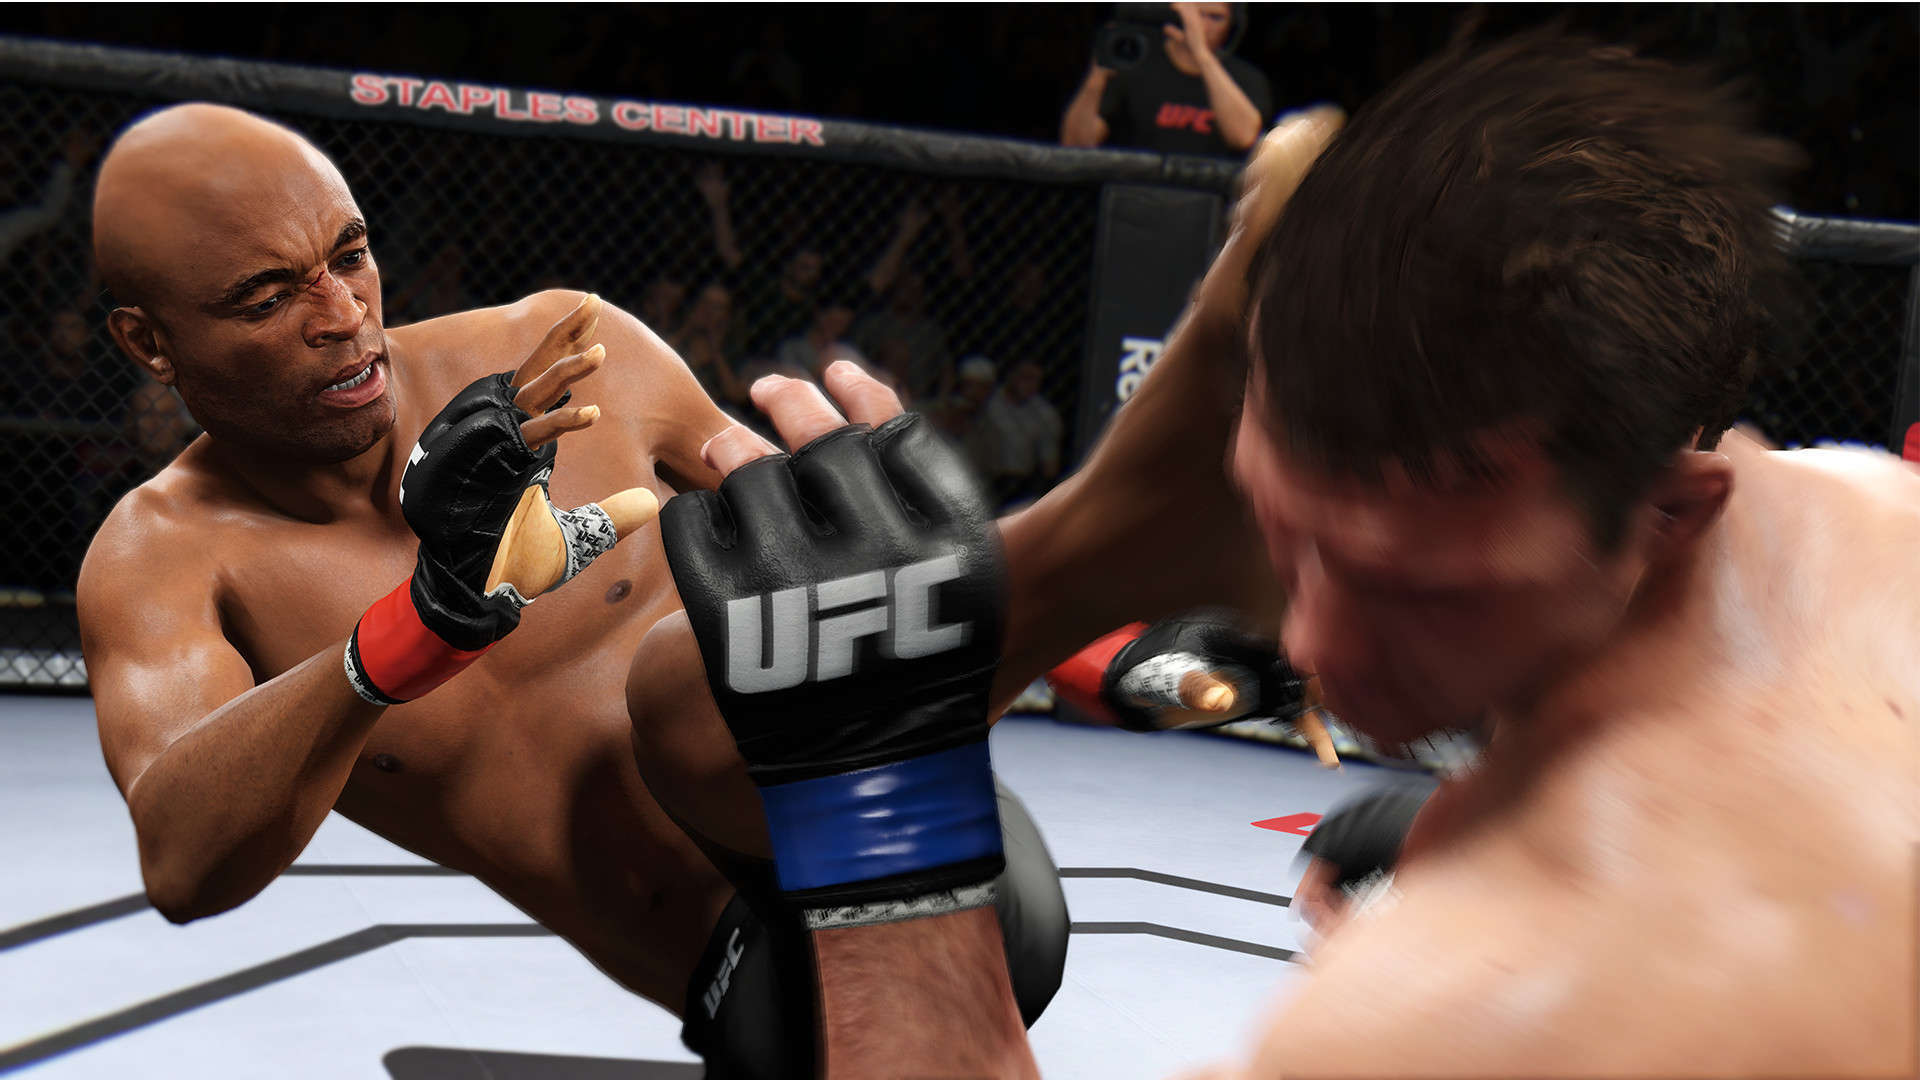 EA annonce UFC 5 – Révélation complète en septembre